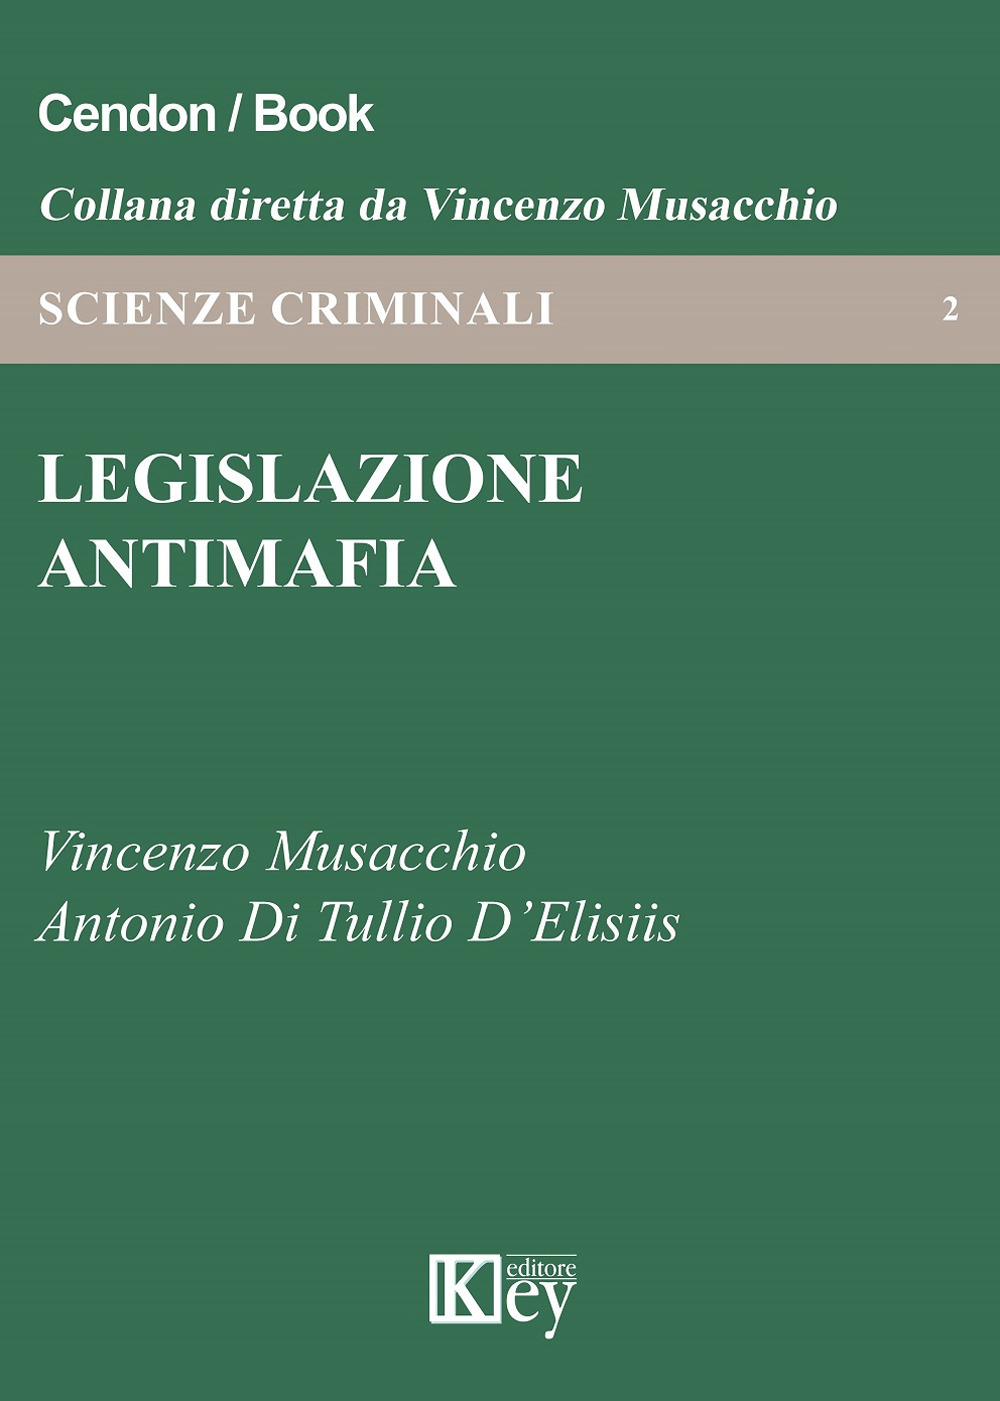 Libri Vincenzo Musacchio / Di Tullio D'Elisiis Antonio - Legislazione Antimafia NUOVO SIGILLATO, EDIZIONE DEL 29/03/2019 SUBITO DISPONIBILE